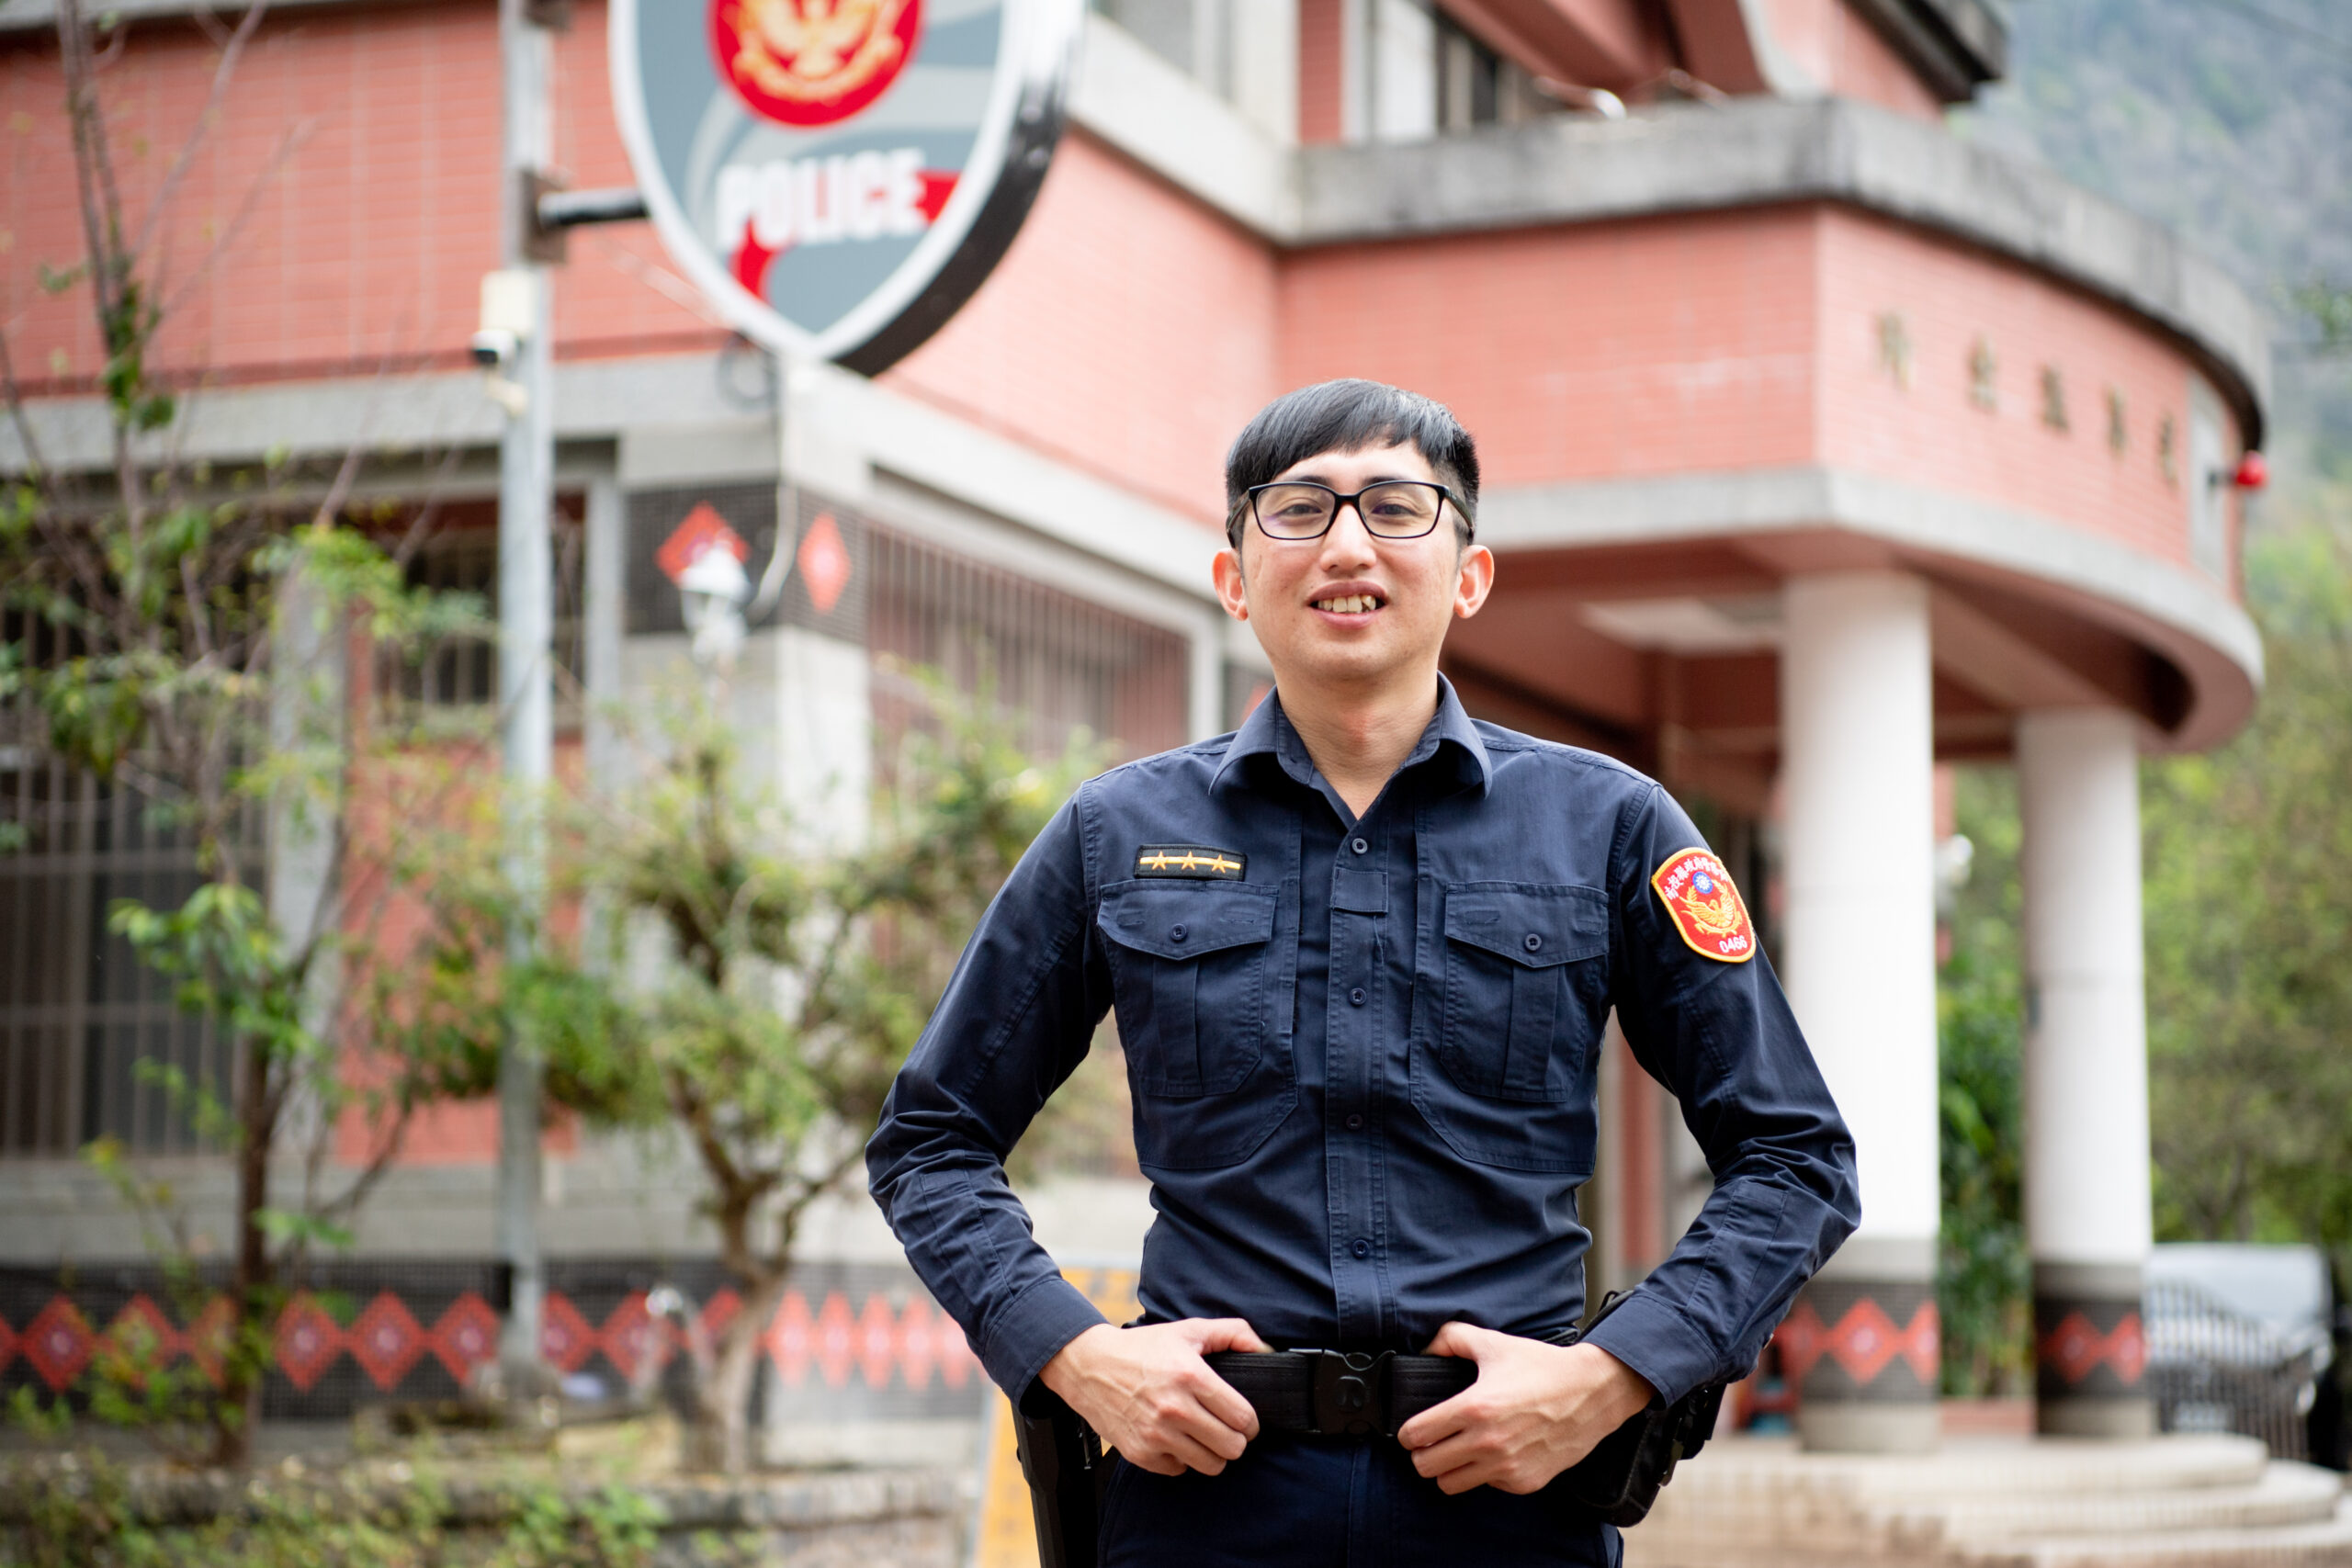 大阿奈董千平，長大後成為部落熱心助人的警察，常提醒自己要成為「有能力幫助他人的人」。台灣世界展望會提供